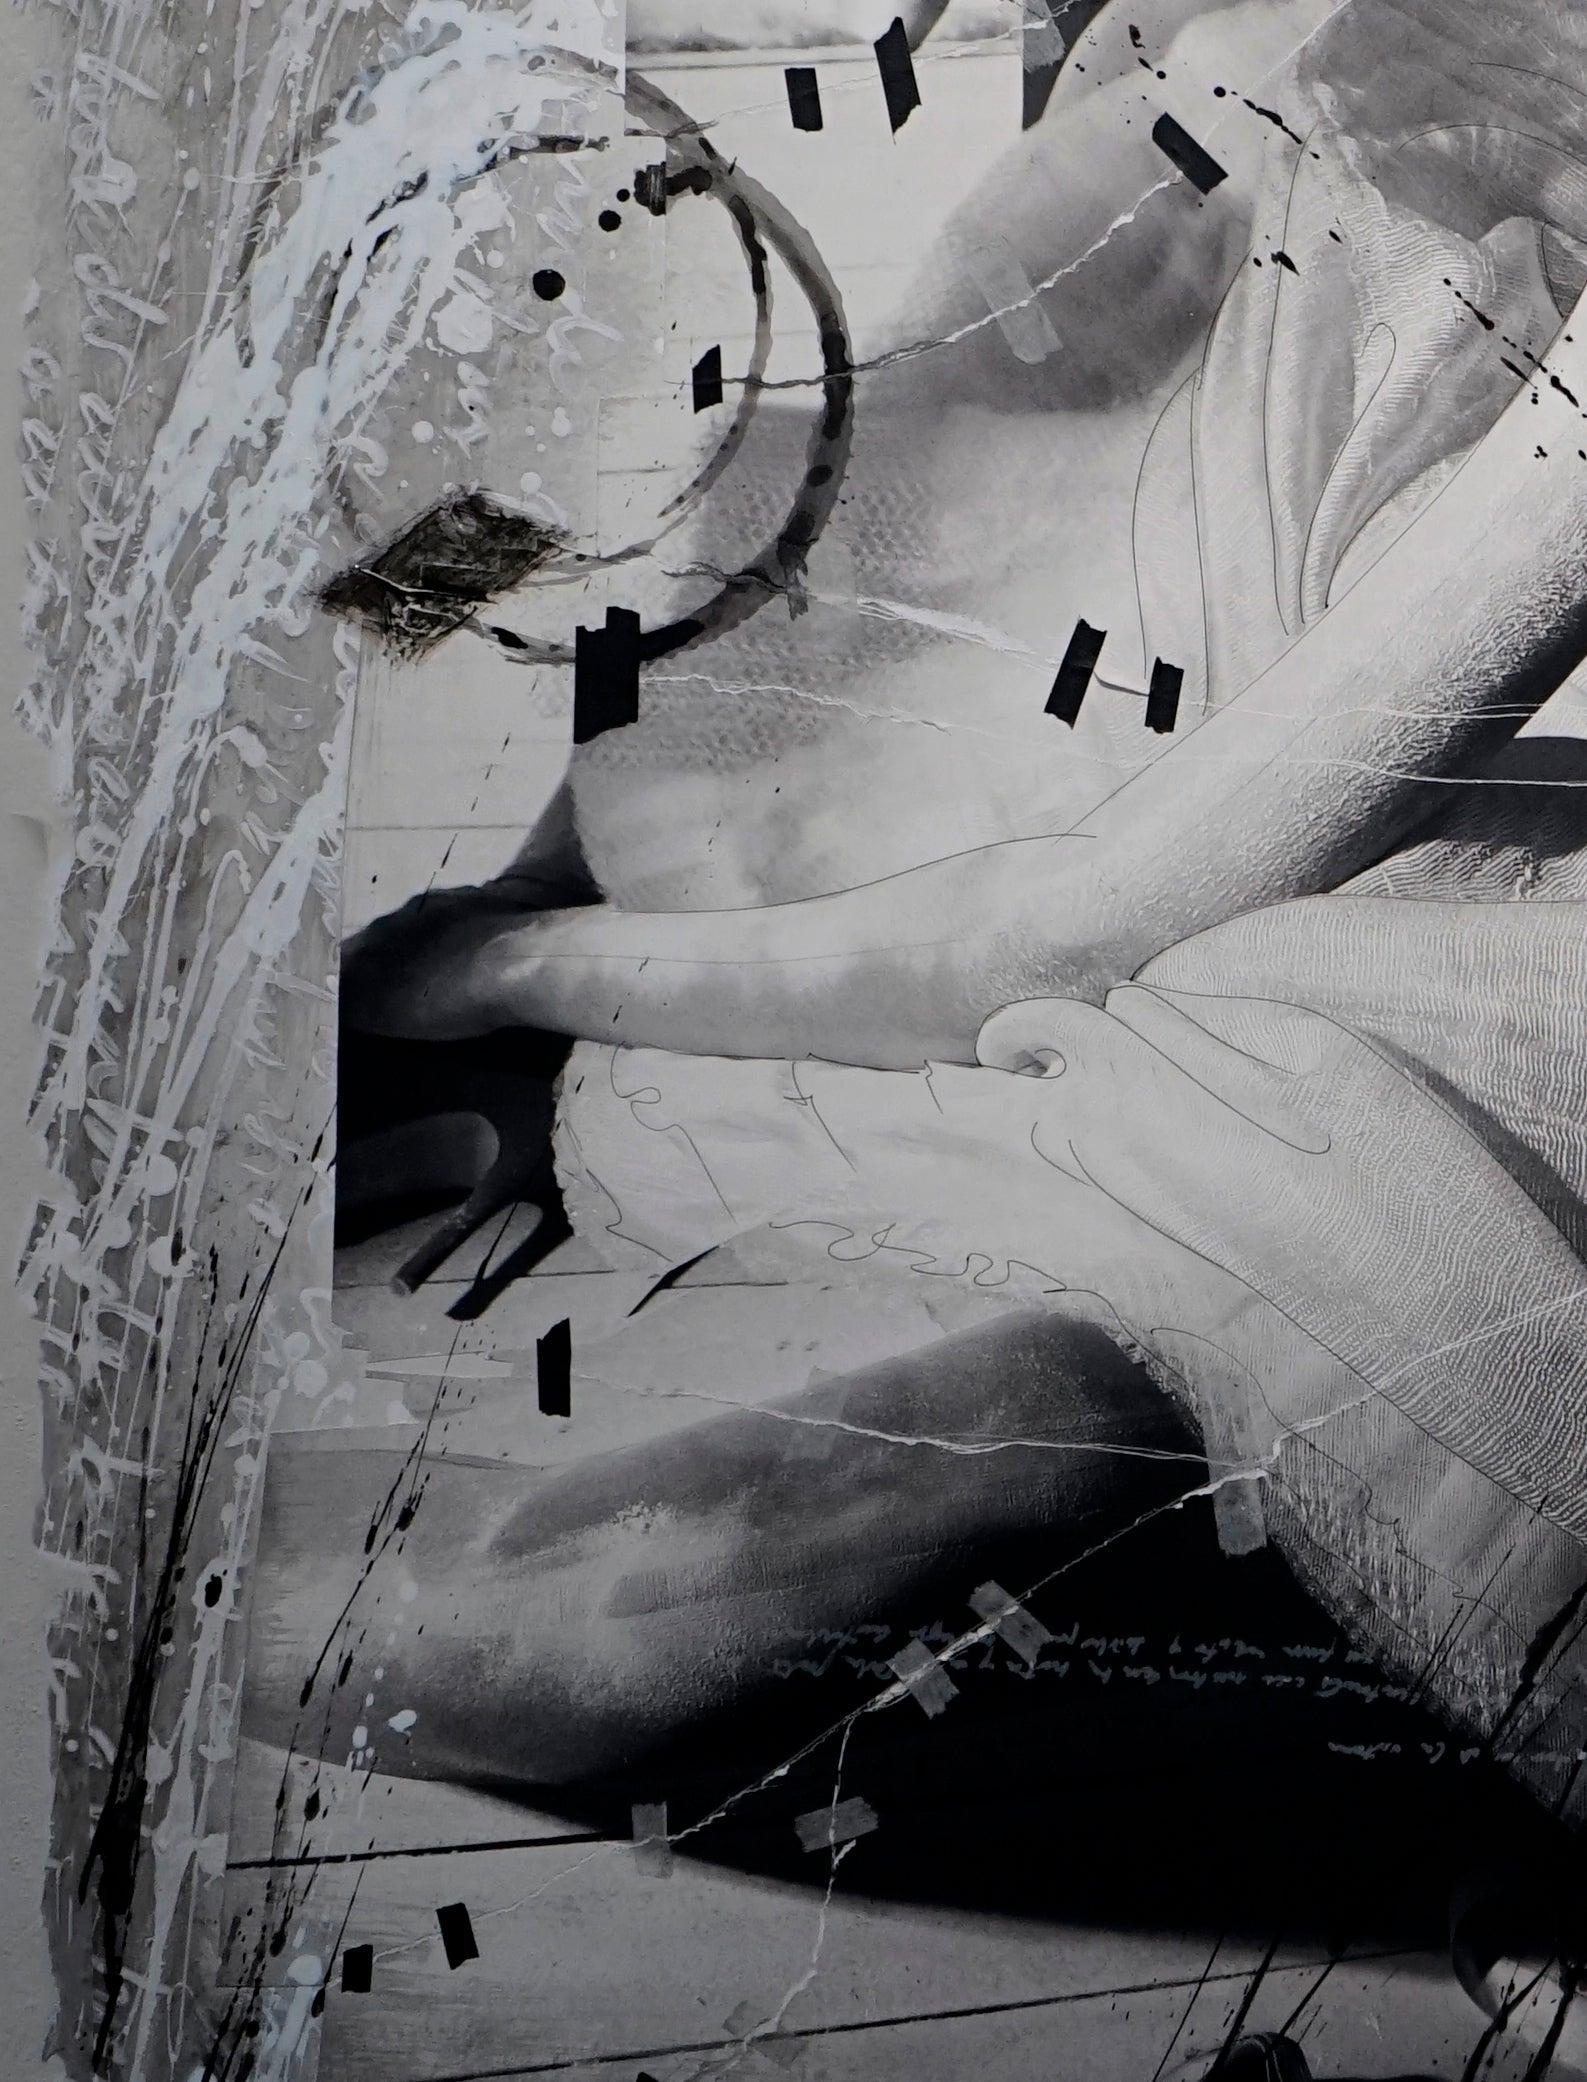 Ballet assis par Efren Isaza
Mesures : 65 x 48 pouces
Impression pigmentaire d'archives montée sur aluminium, intervention de l'artiste.
Signé, titré, daté et annoté par l'artiste au verso.
Monté sur aluminium.

Cette série d'œuvres d'art uniques